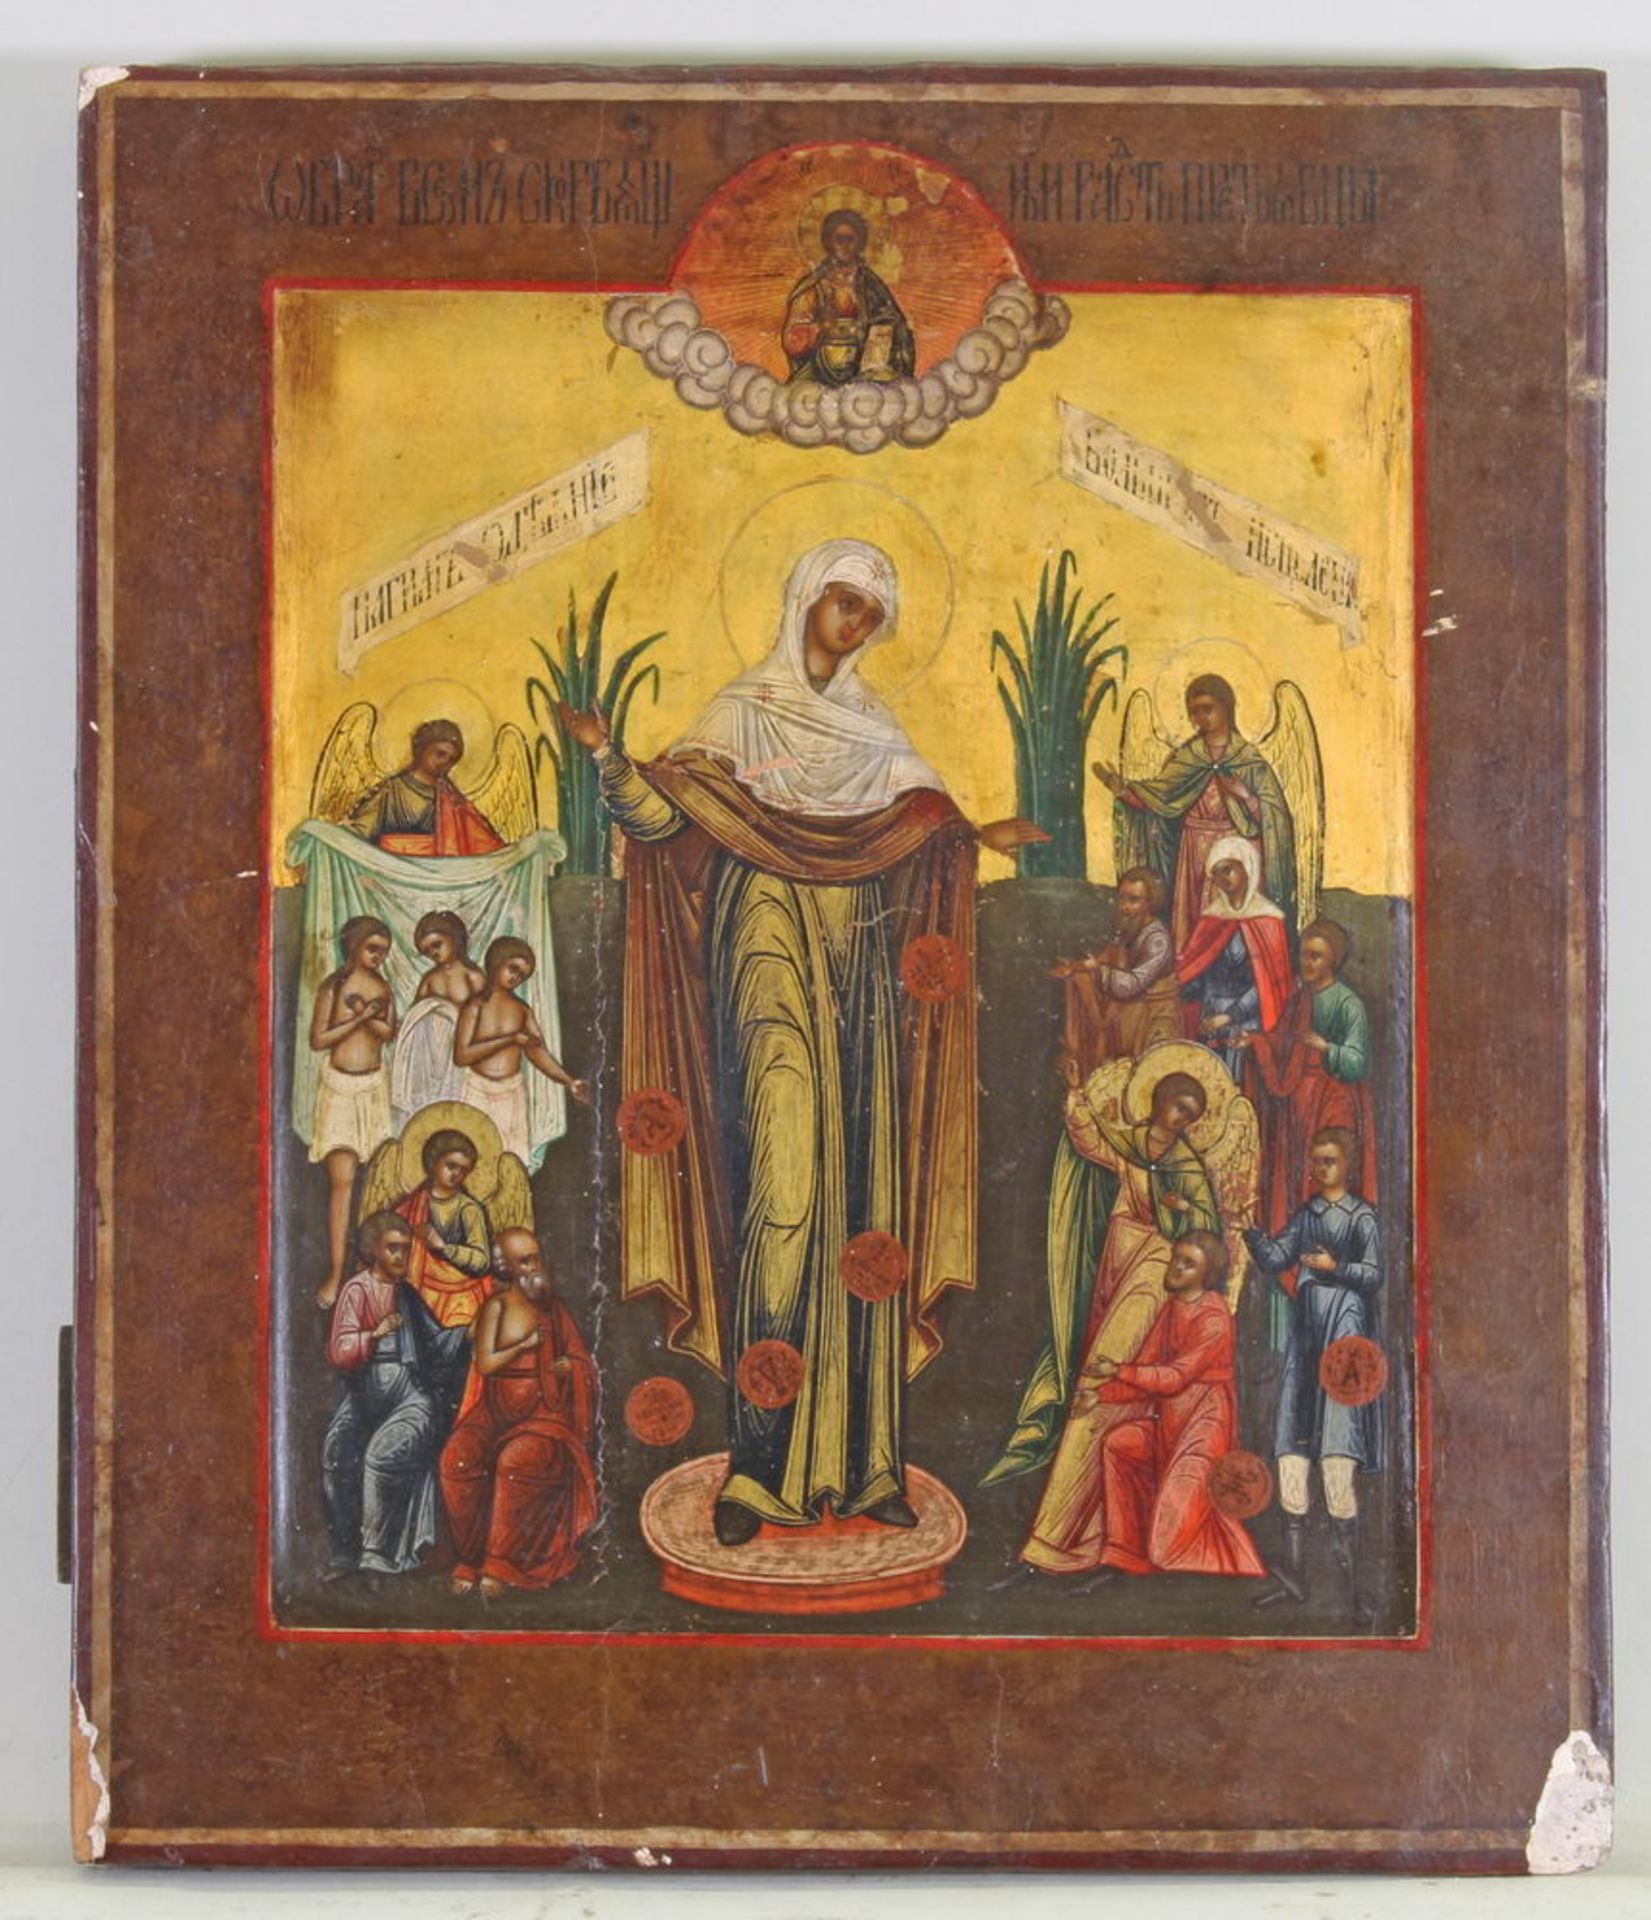 Ikone, Tempera auf Holz, "Gottesmutter Freude aller Leiden", Russland, 19. Jh., 31 x 27 cm, beschä